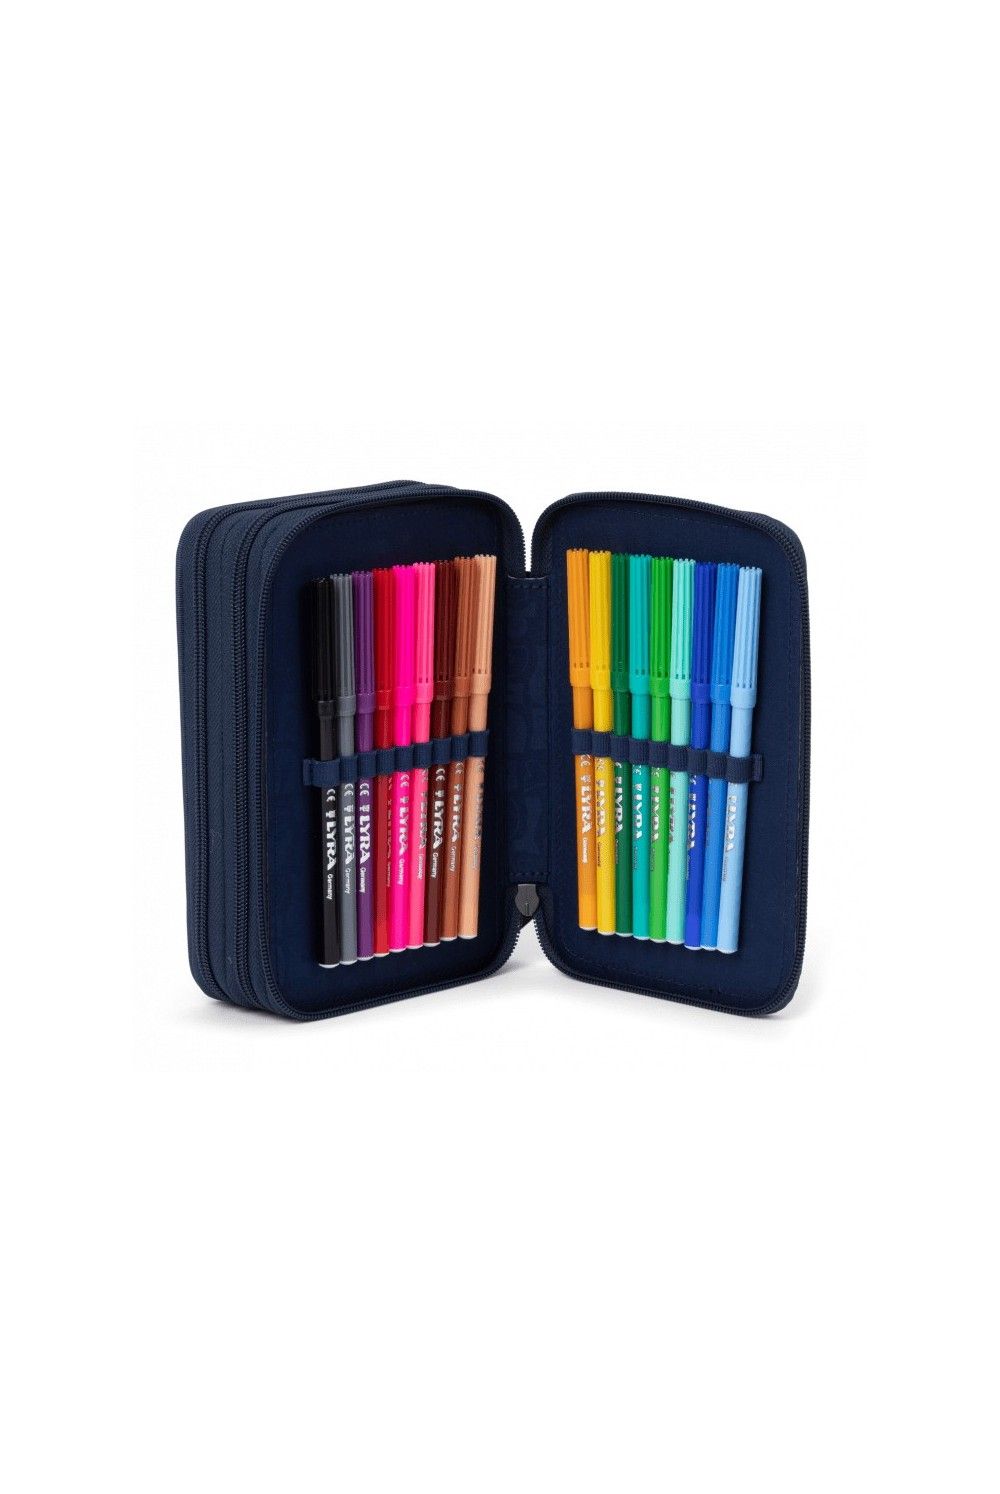 Ergobag maxi pencil case Bärlaxy